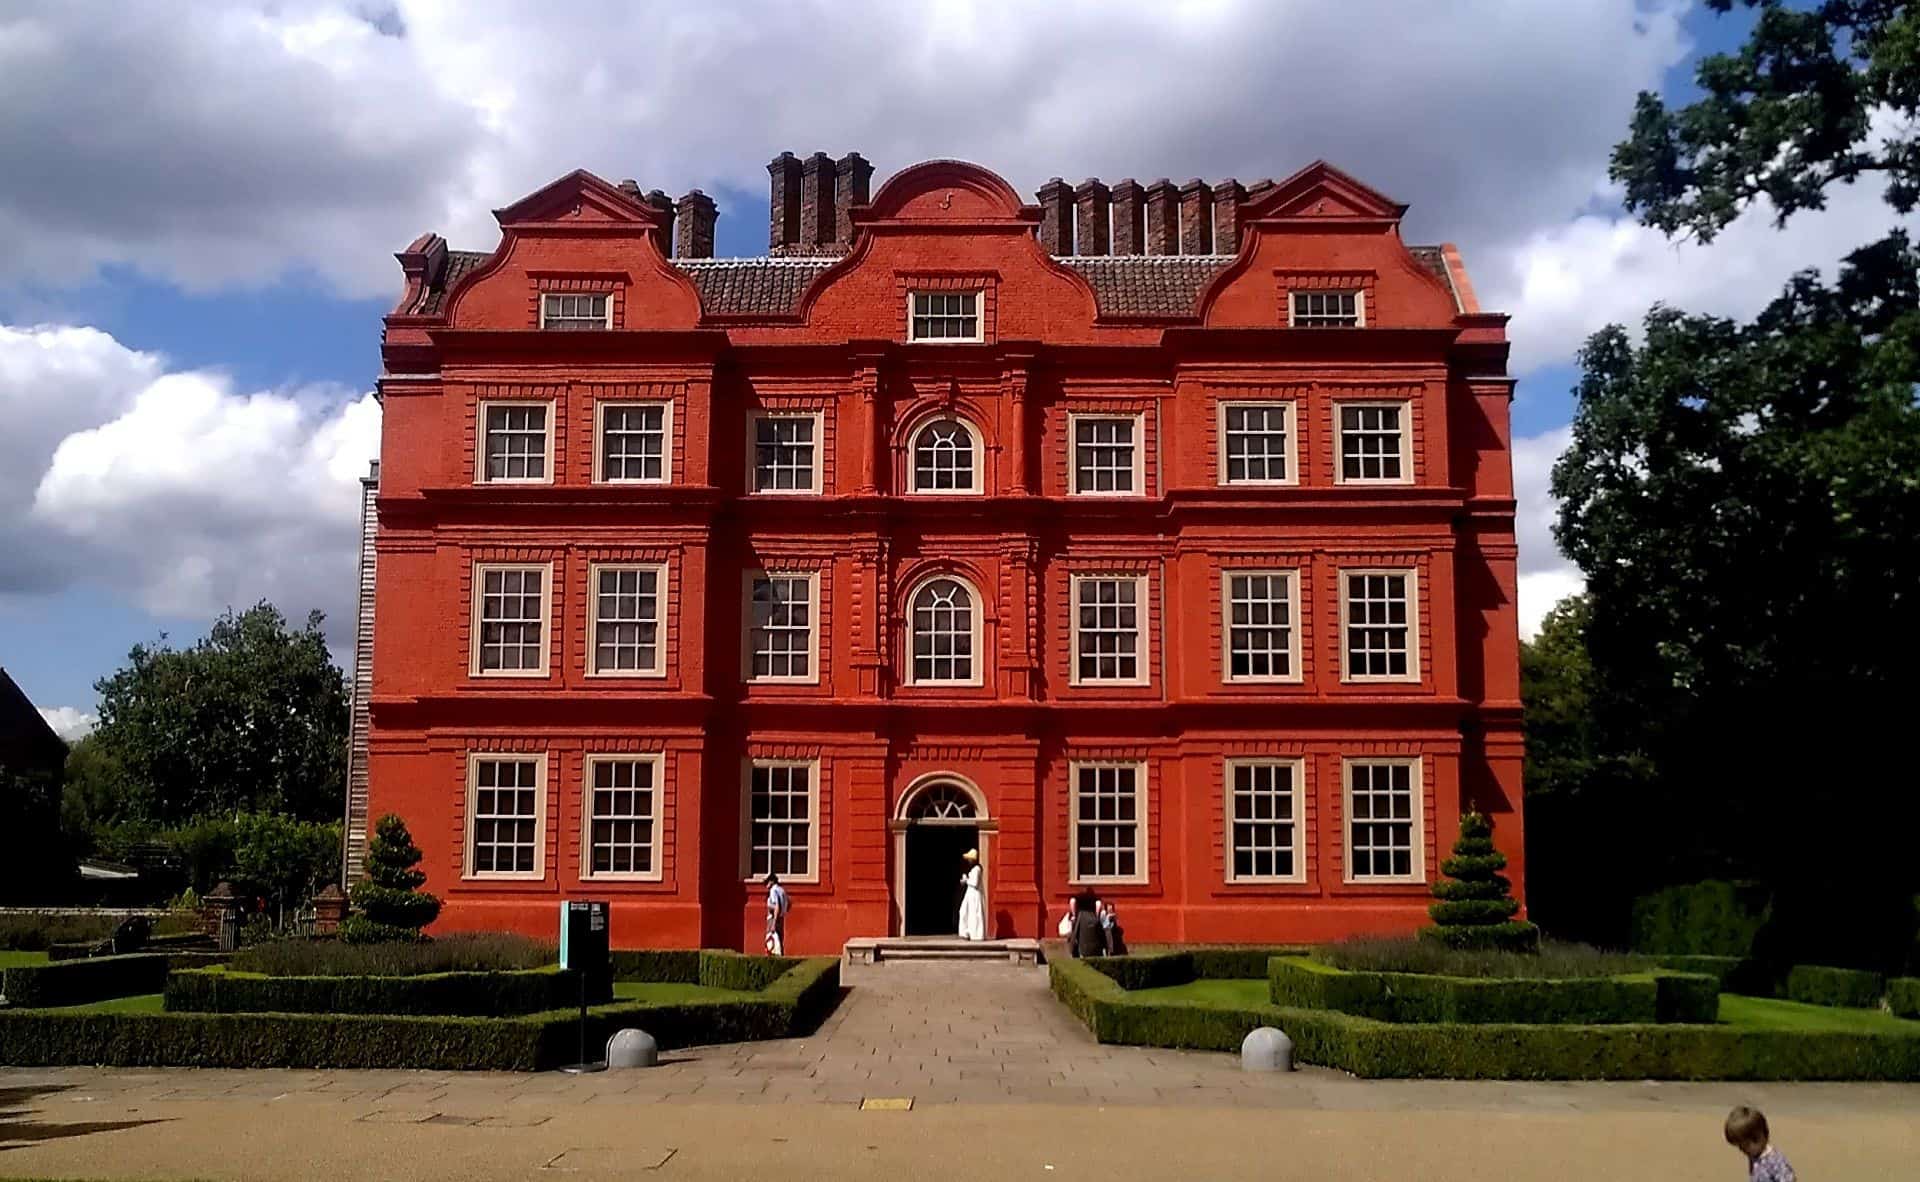 Kew Palace in UK